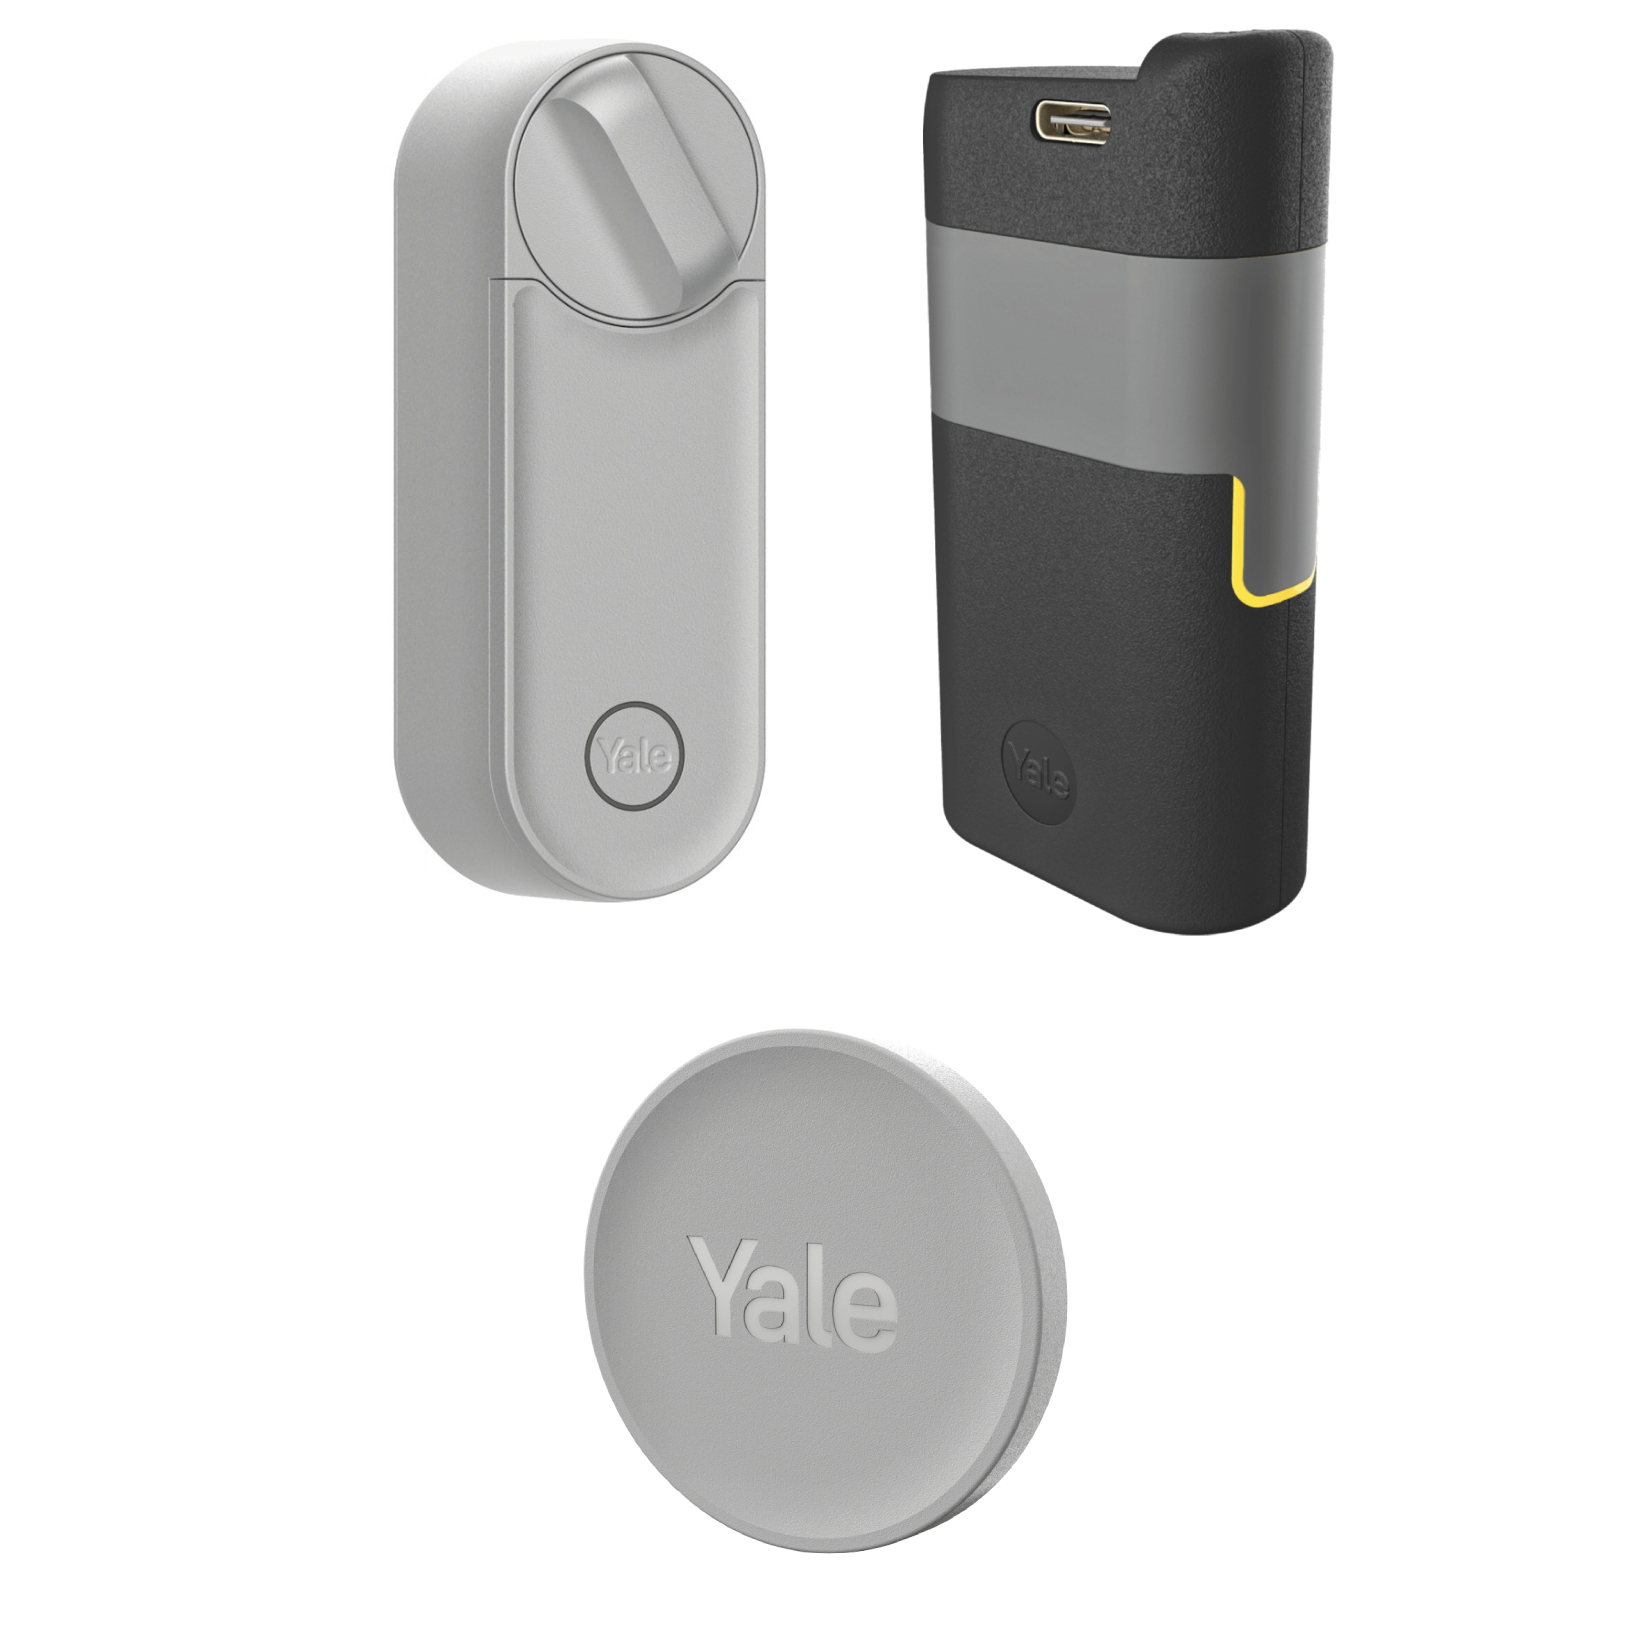 Co otrzymujesz kupując inteligentny zamek Yale Linus Smart Lock L2 w kolorze srebrnym?